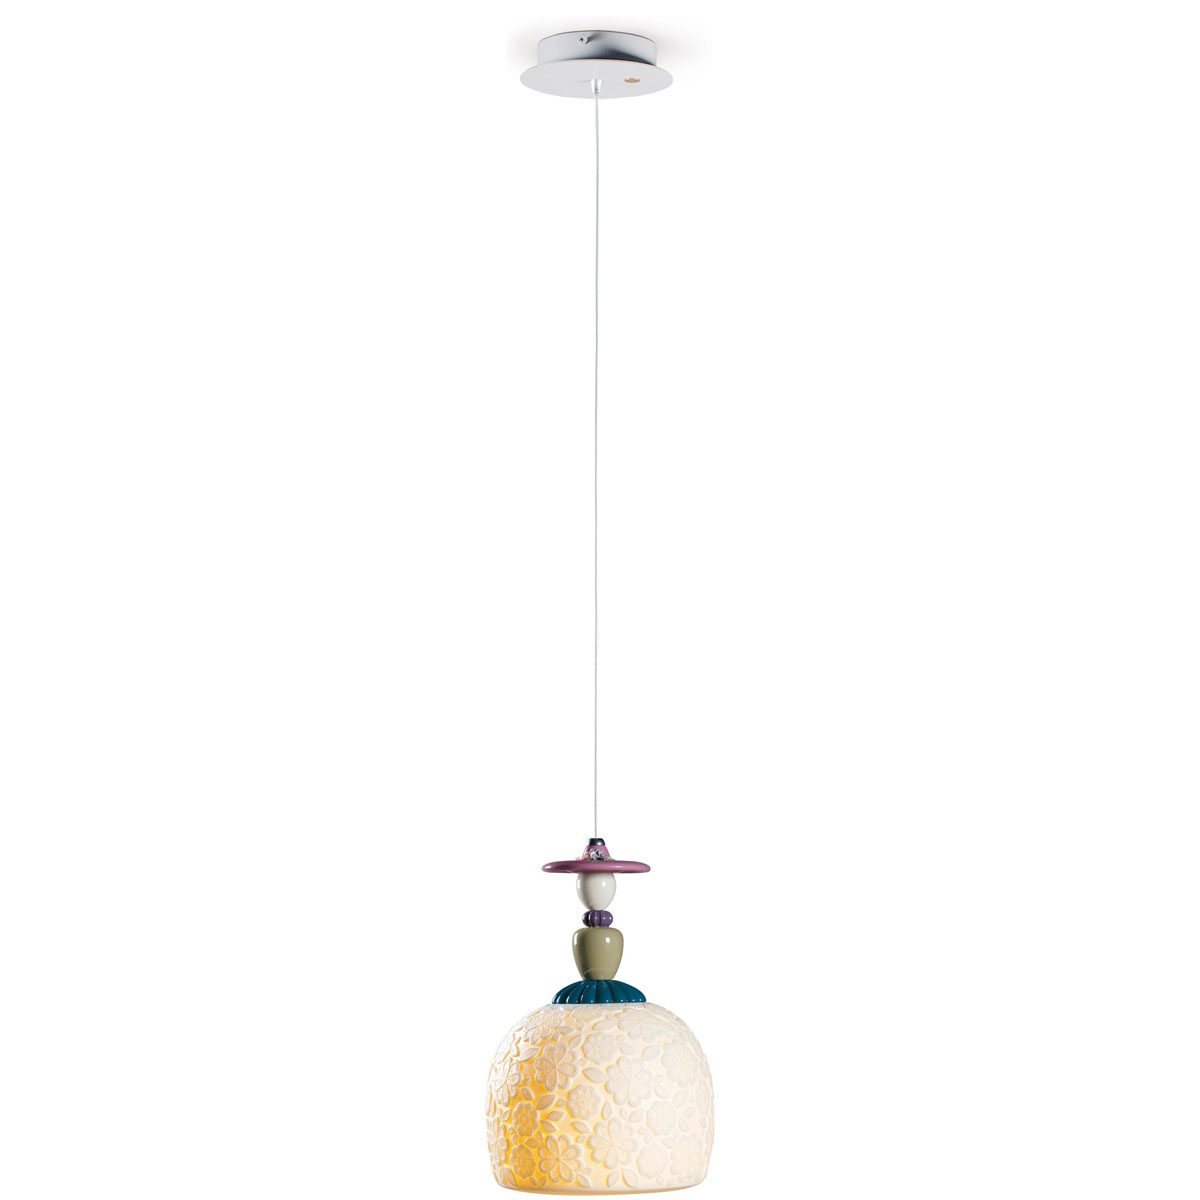 Lladro Classic Lighting, Mademoiselle Annette Ceiling Lamp